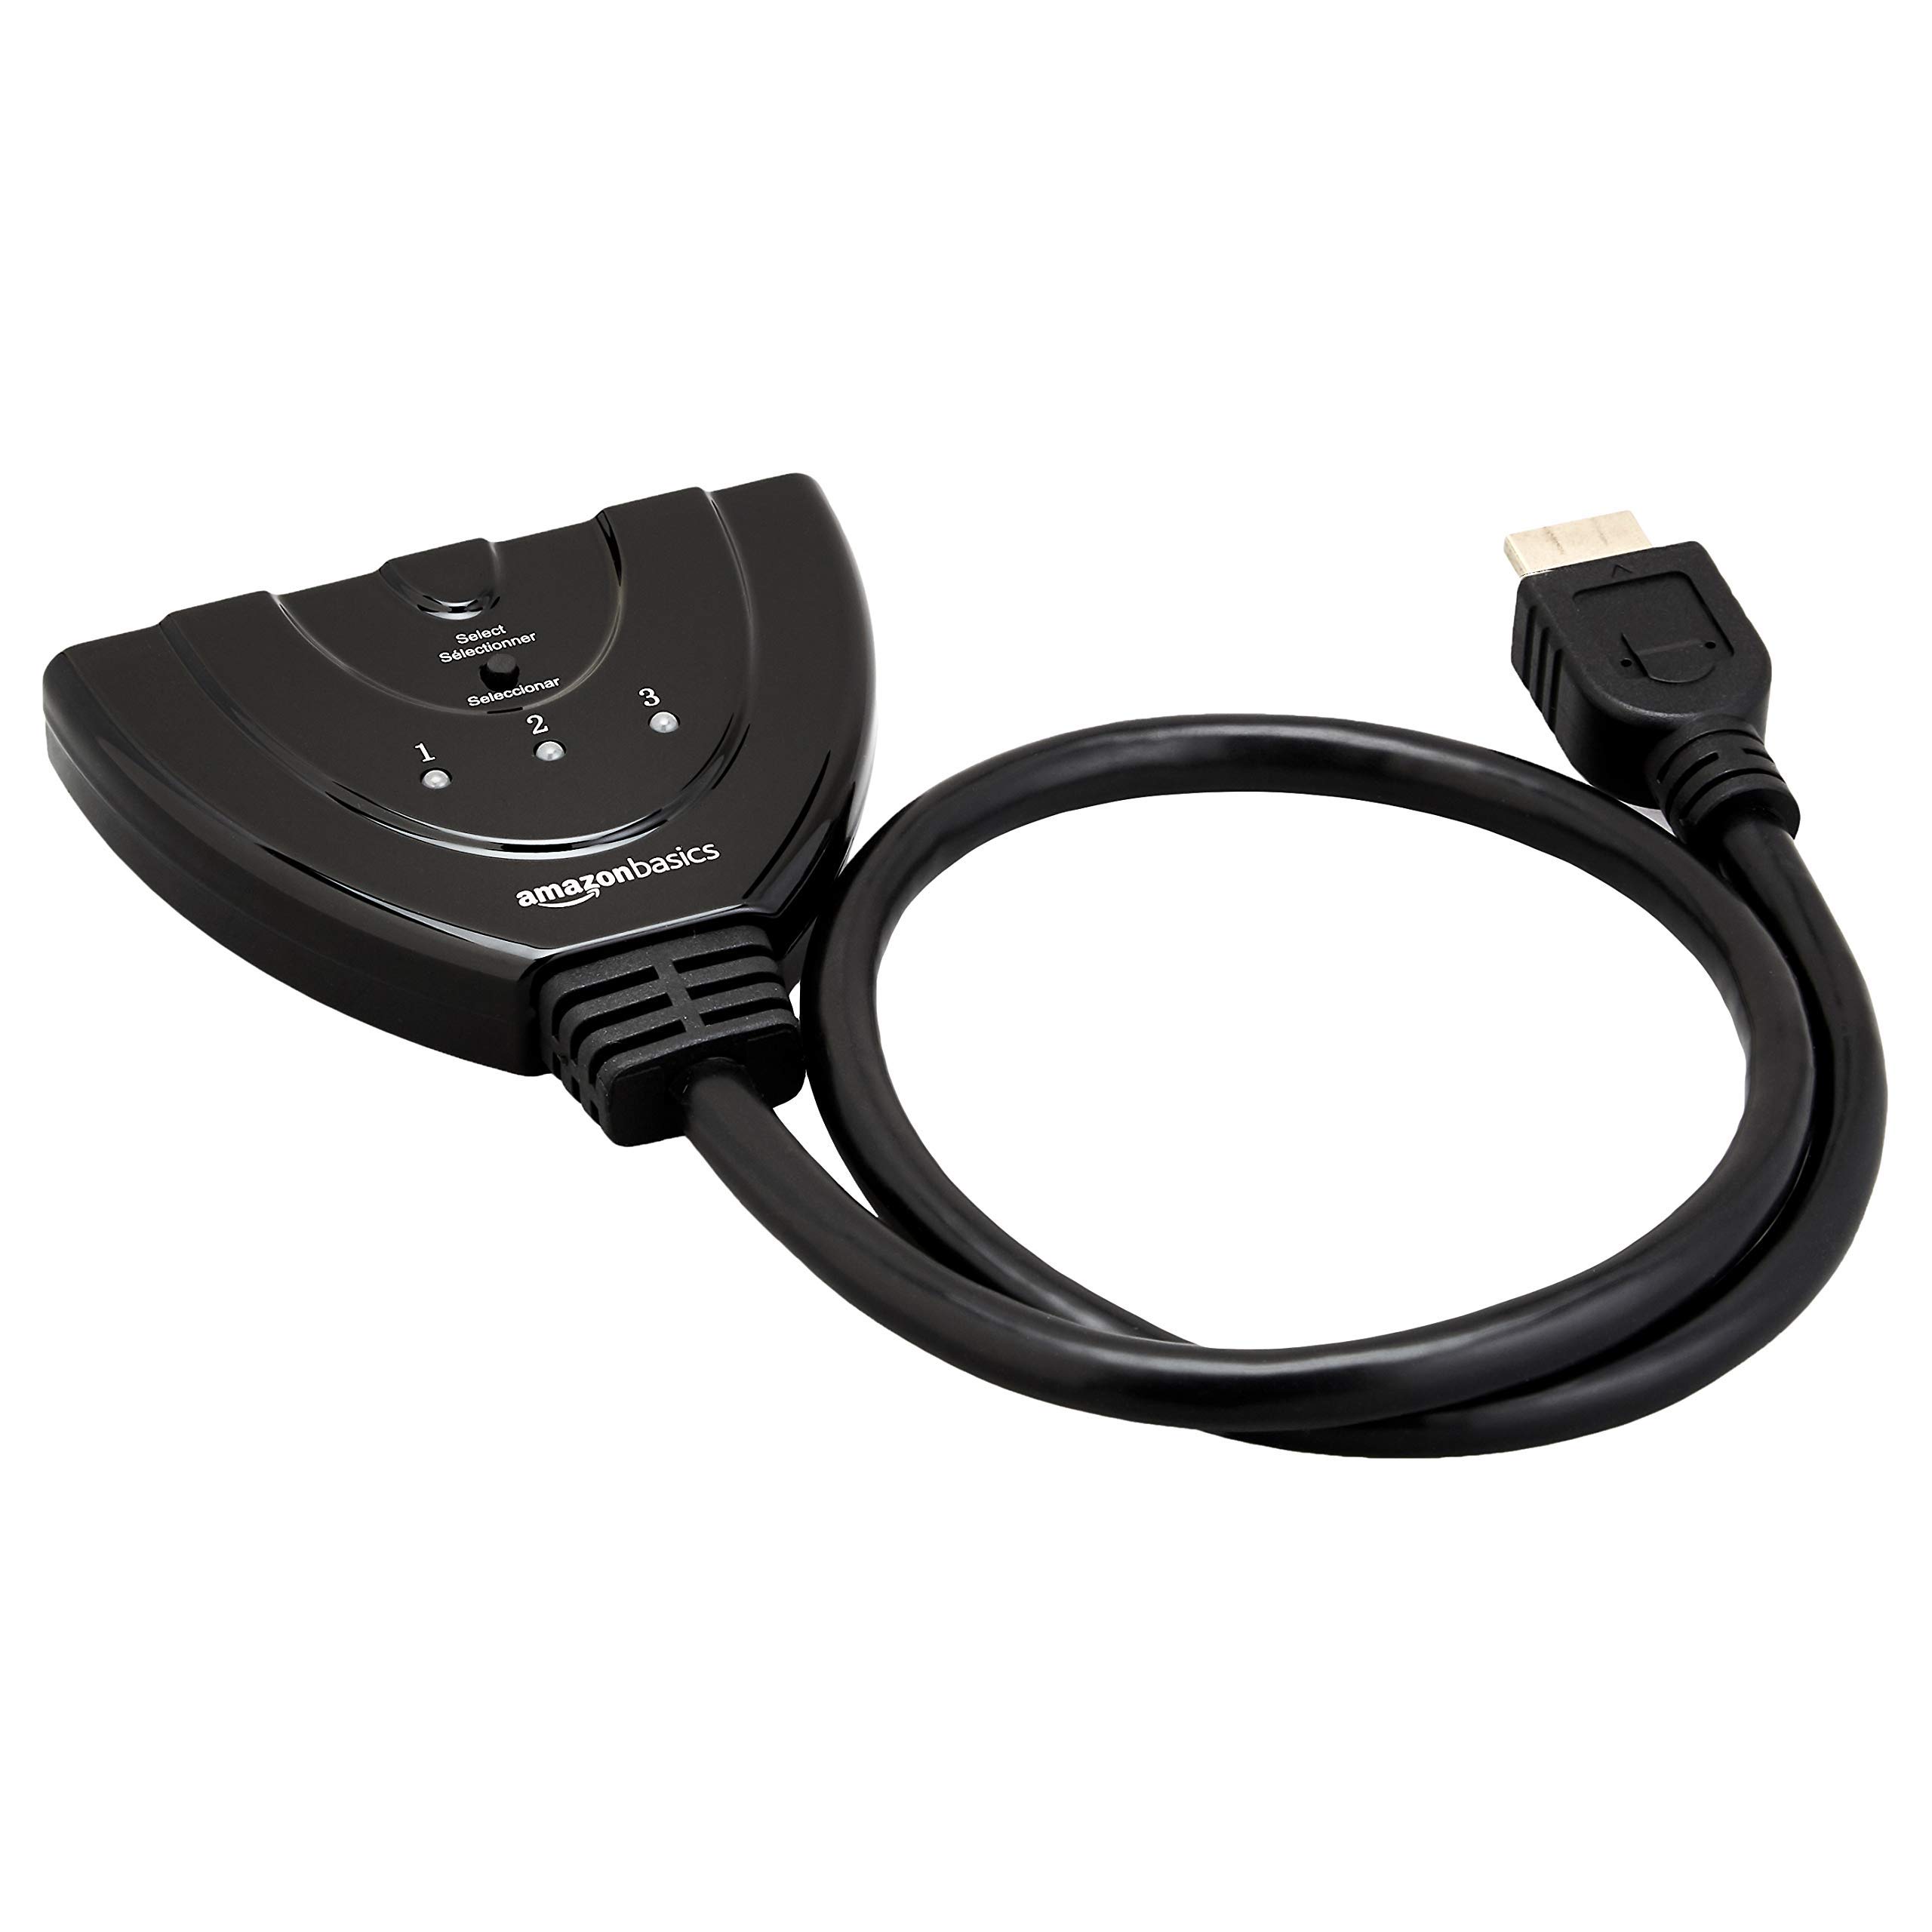 bon prix Amazon Basics Commutateur HDMI à 3 ports avec câble Pigtail compatible avec la vidéo Full HD 4K @30Hz, sortie 3 en 1, Noir mHh67BPxs Vente chaude